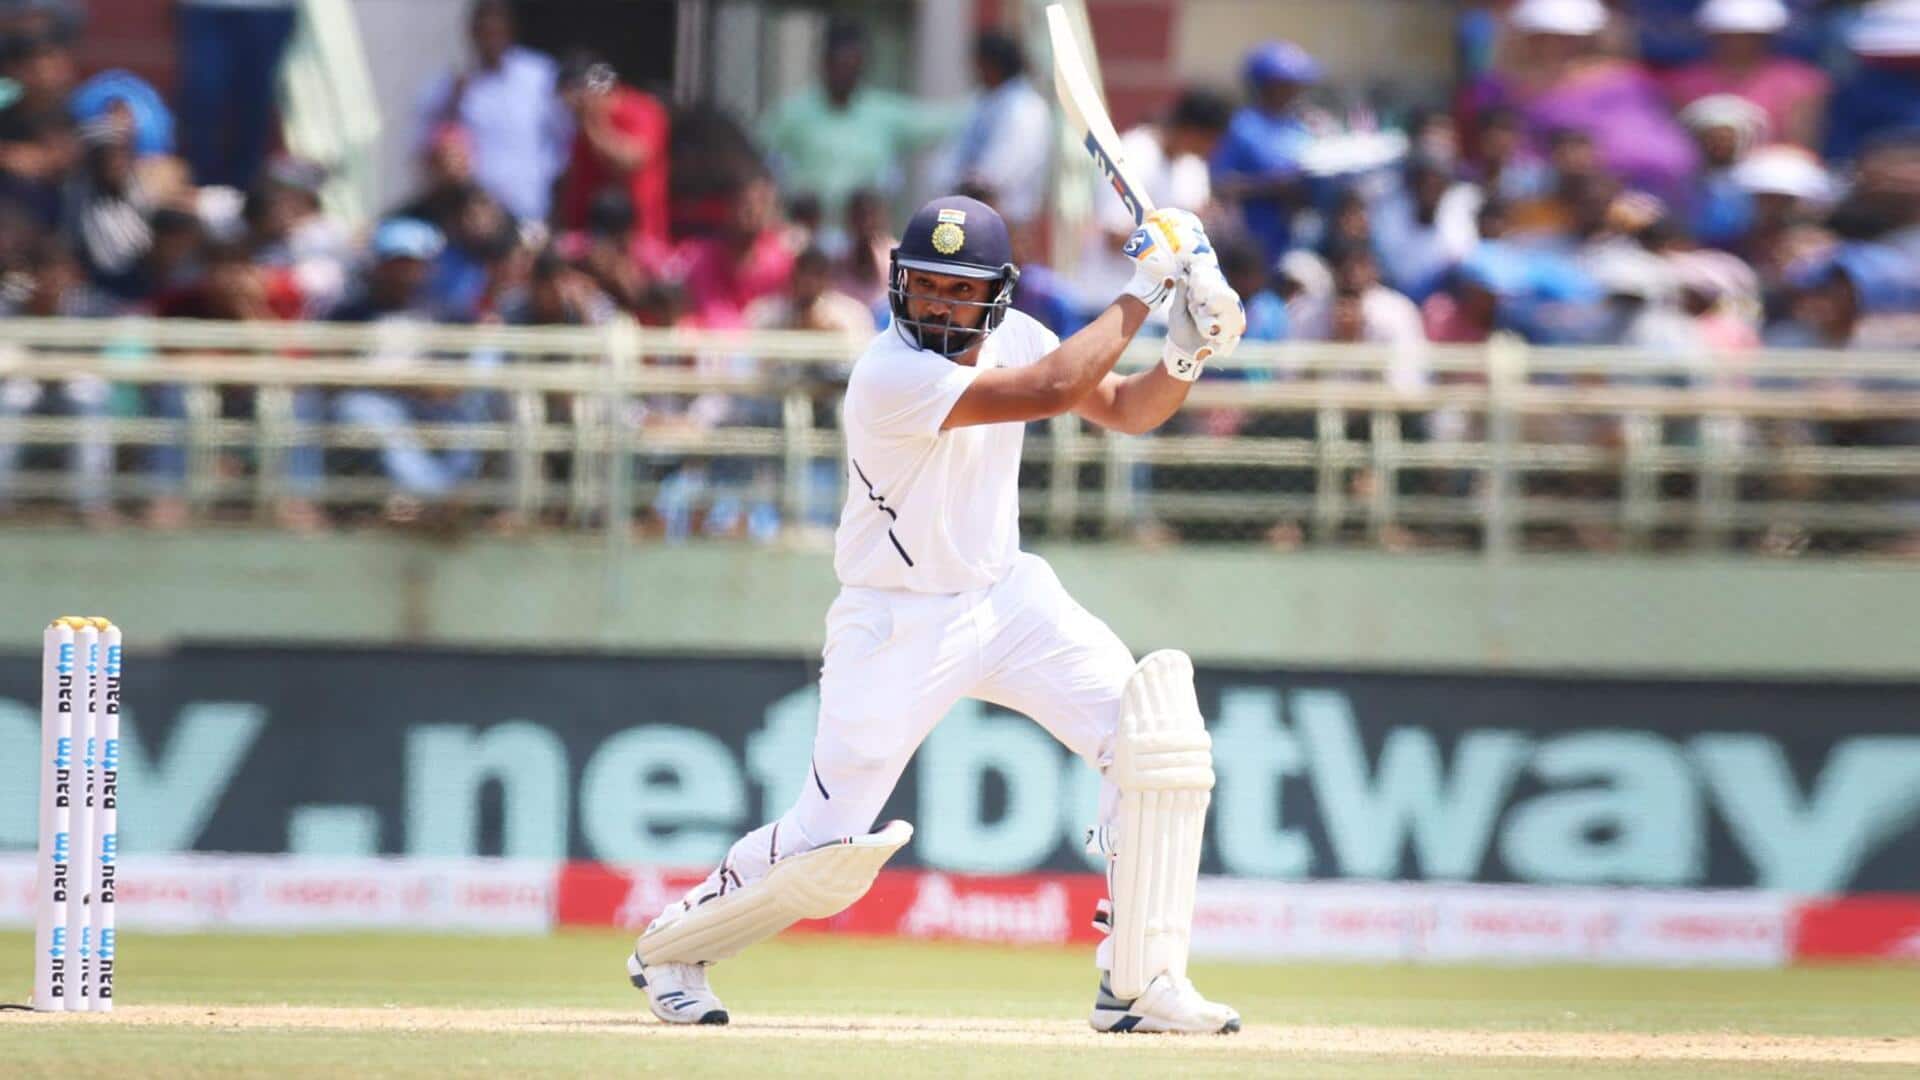 WTC फाइनल: रोहित शर्मा का ऑस्ट्रेलिया के खिलाफ टेस्ट में कैसा रहा है प्रदर्शन? जानिए आंकड़े 